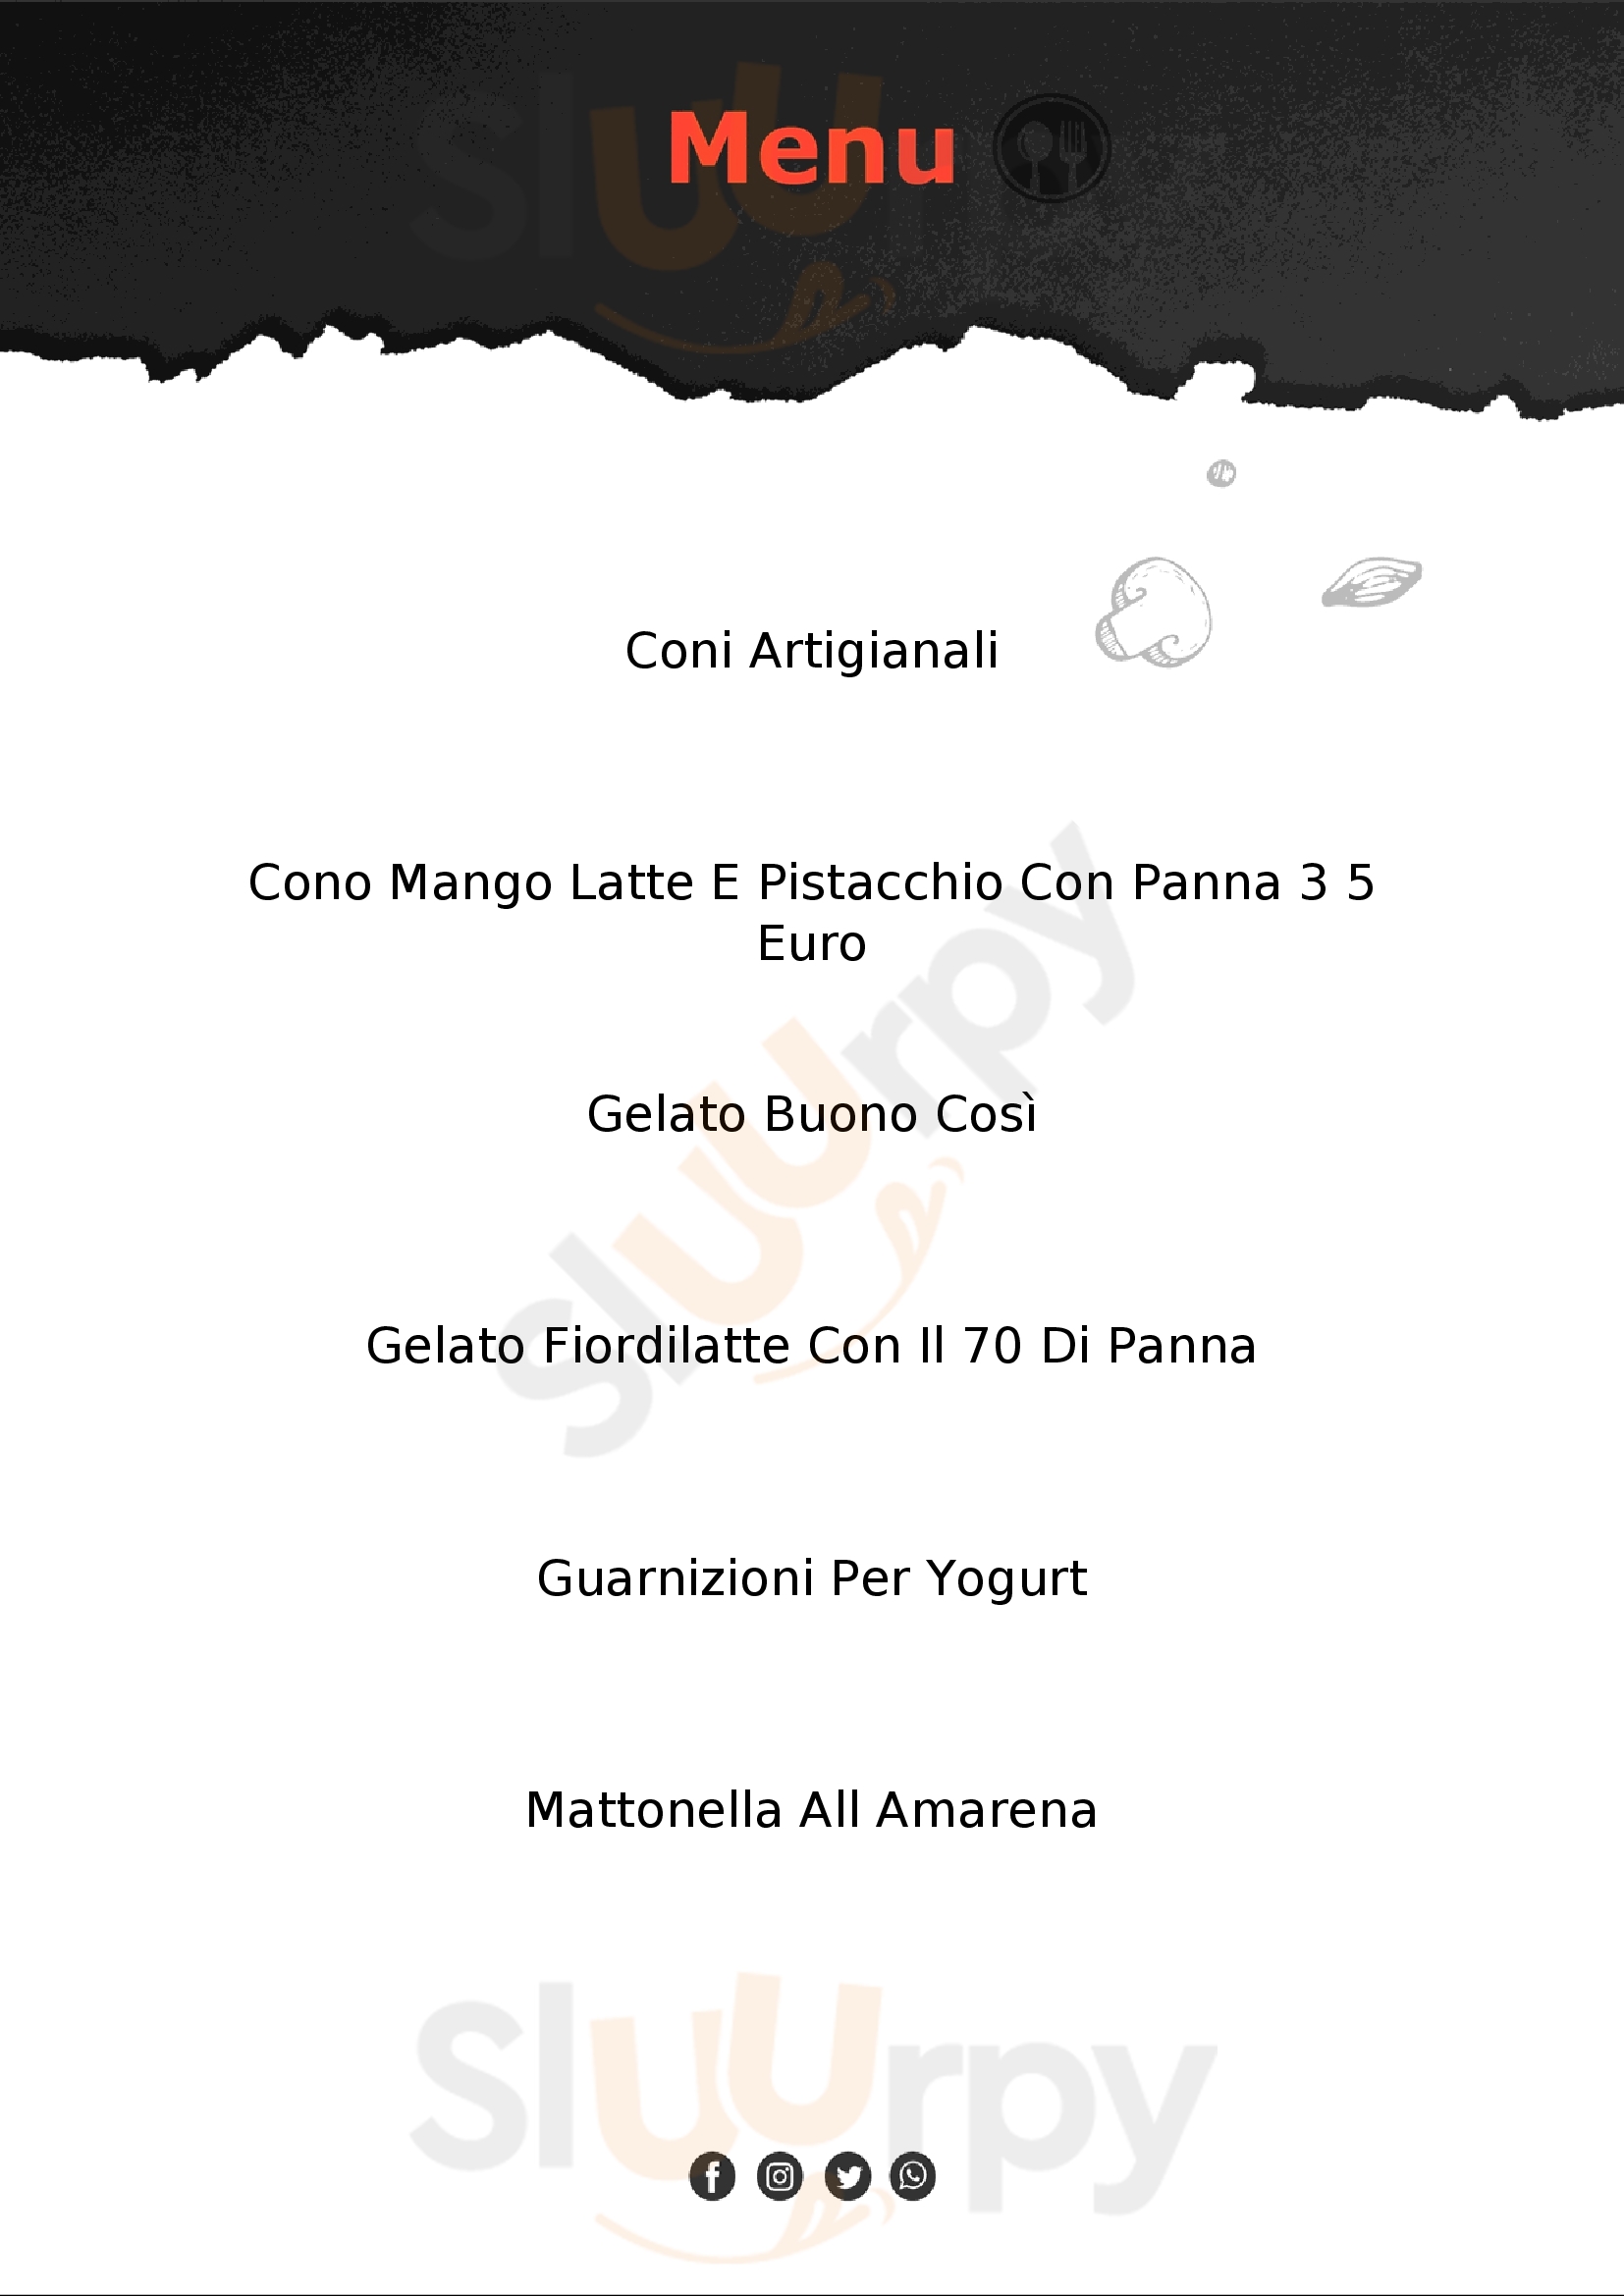 Buono Così - Gelateria Naturale Roma menù 1 pagina